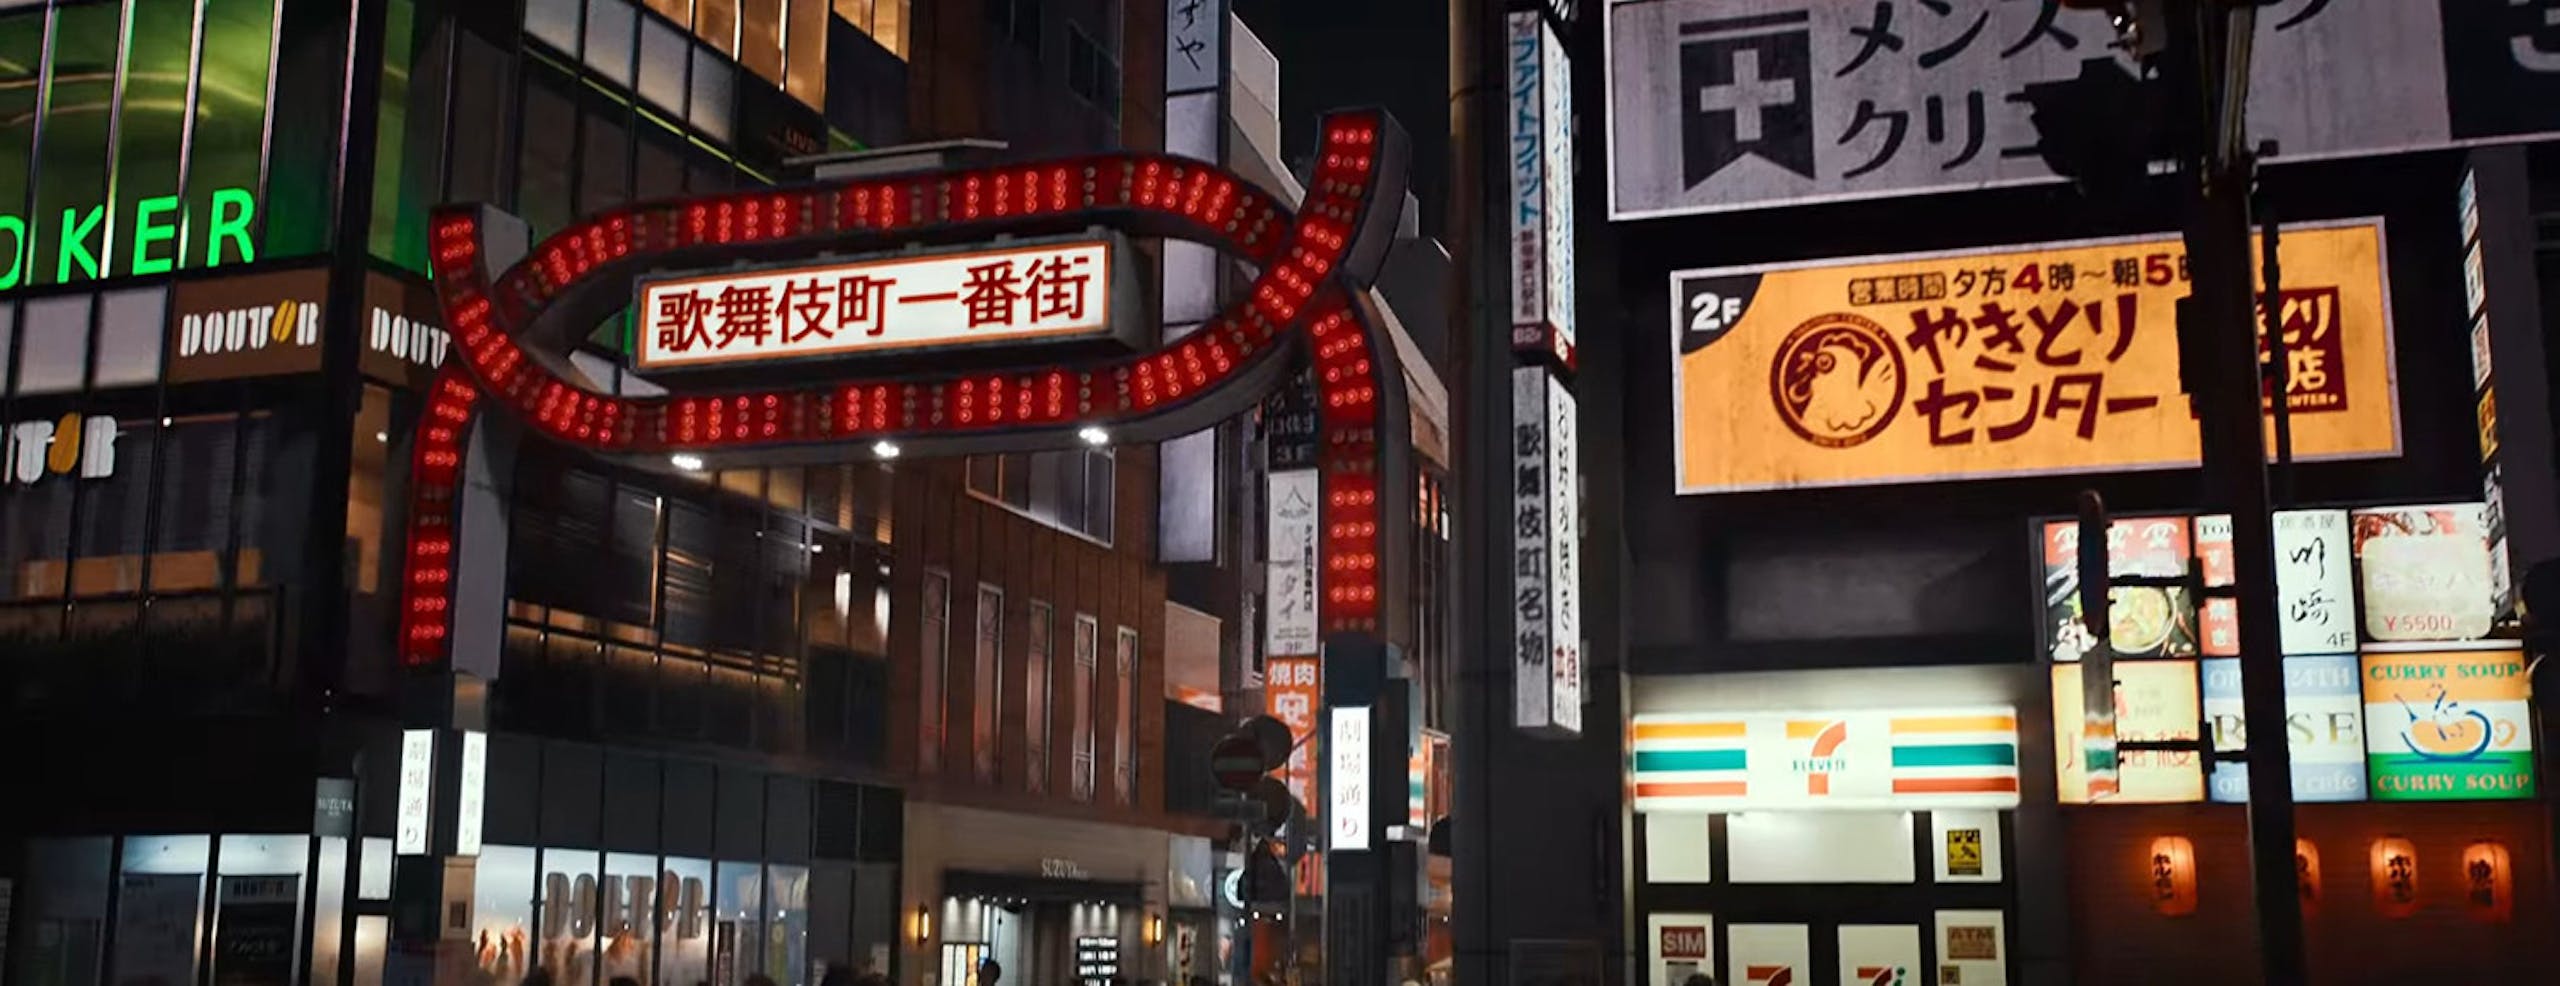 Netflix 《殭尸 100：在成为殭尸前要做的 100 件事》电影圣地巡礼！整理电影内出现的 N 个日本知名景点（有雷）-1